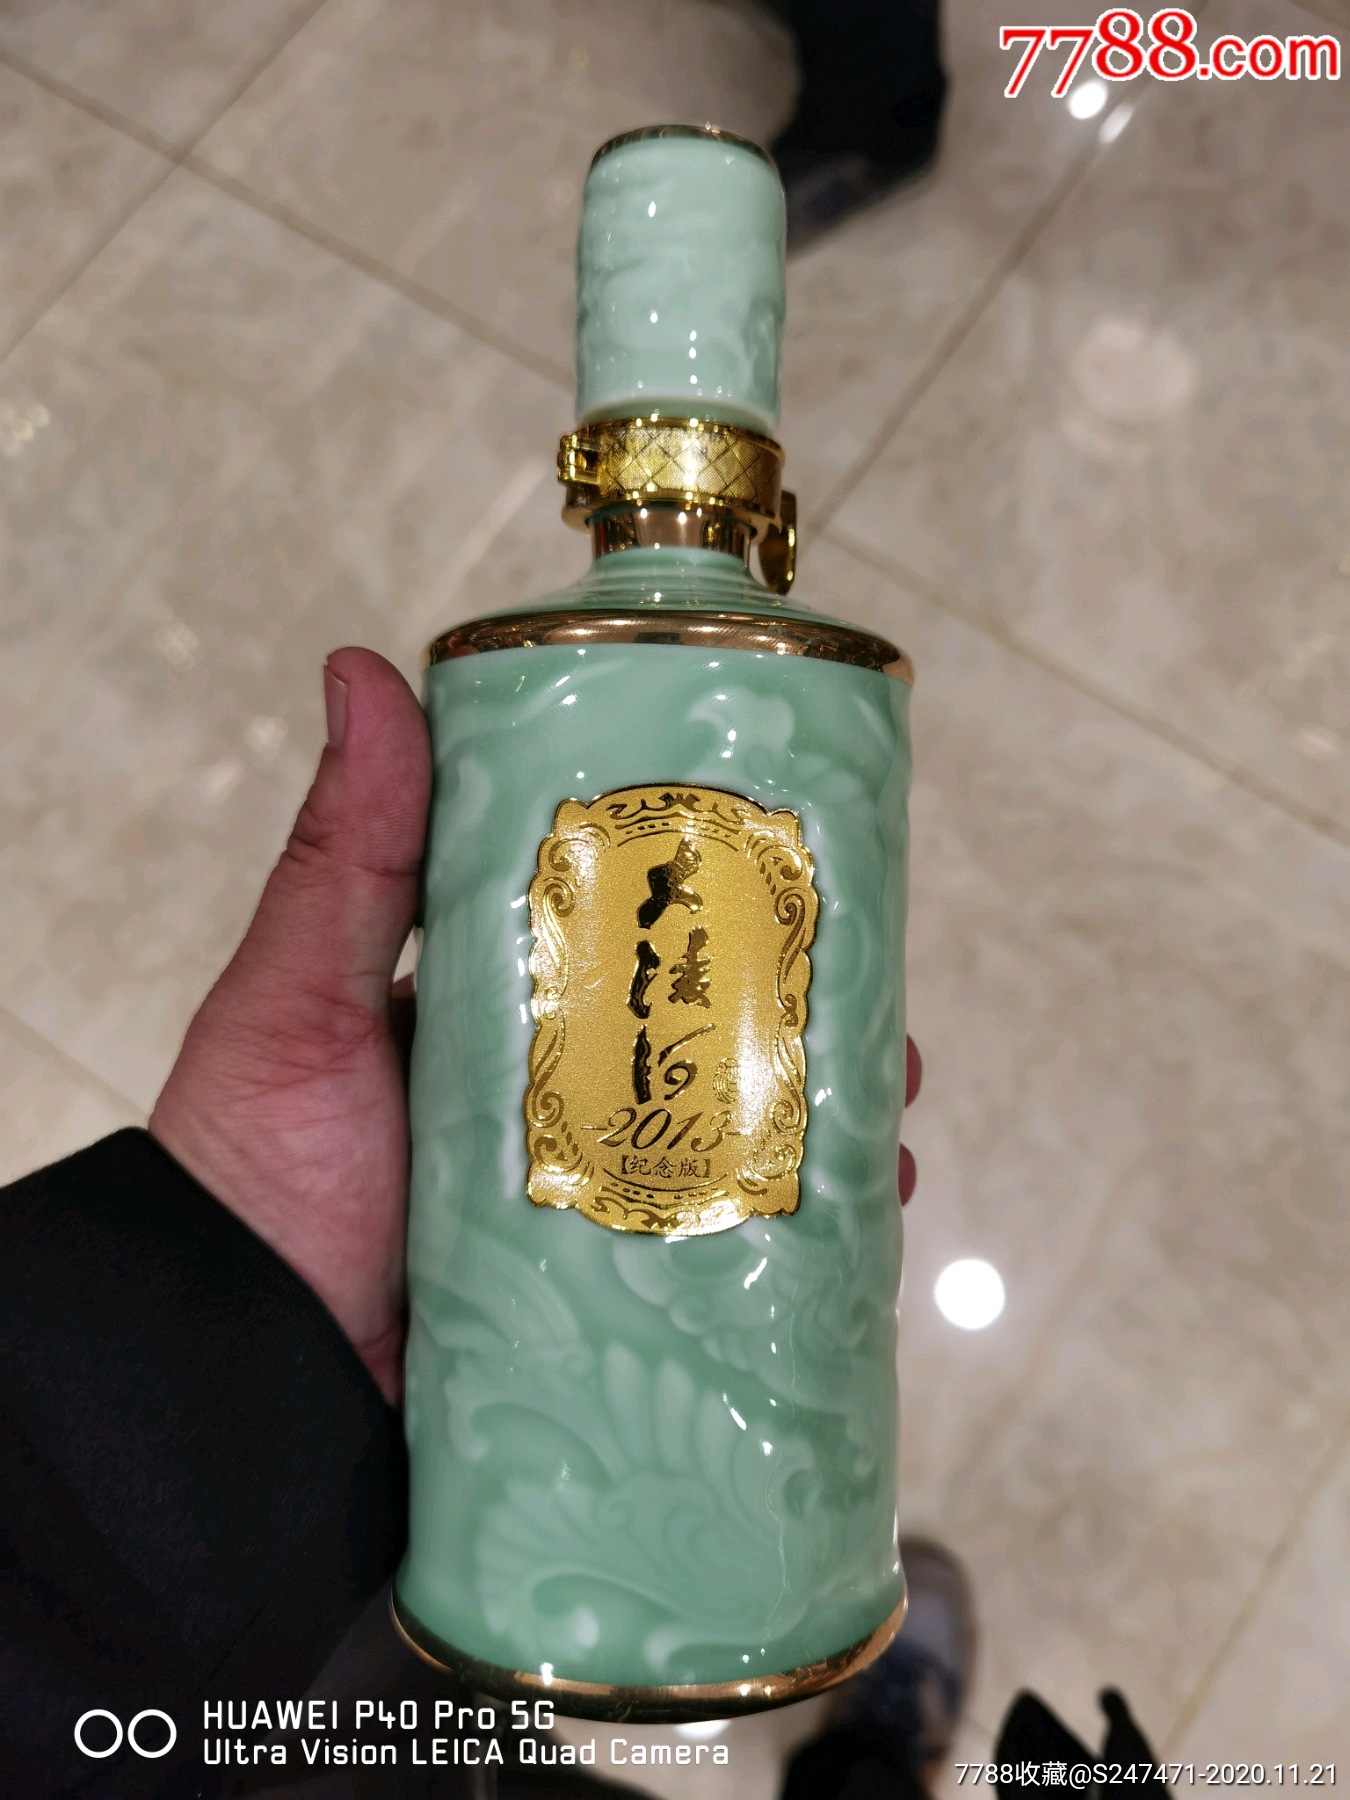 0浏览量:备注:辽宁大凌河酒厂,2013年出品一批大凌河纪念版存市不多